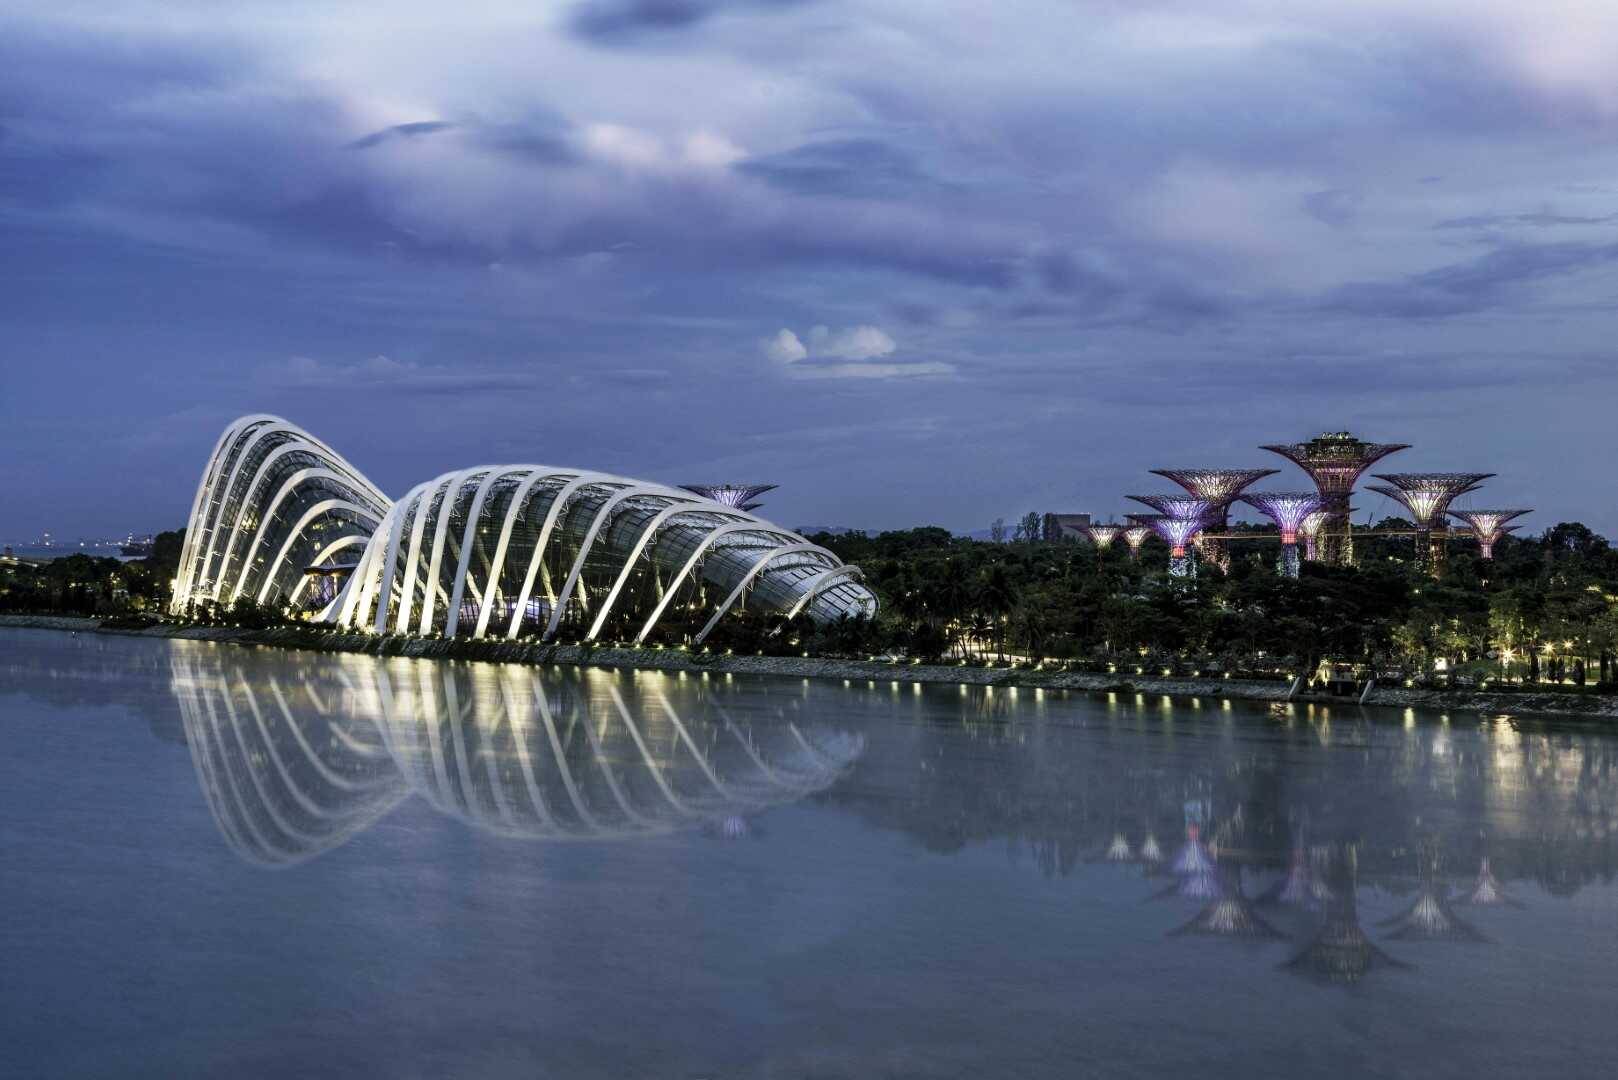 Du lịch Châu Á - Malaysia - Singapore dịp Hè từ Sài Gòn giá tốt